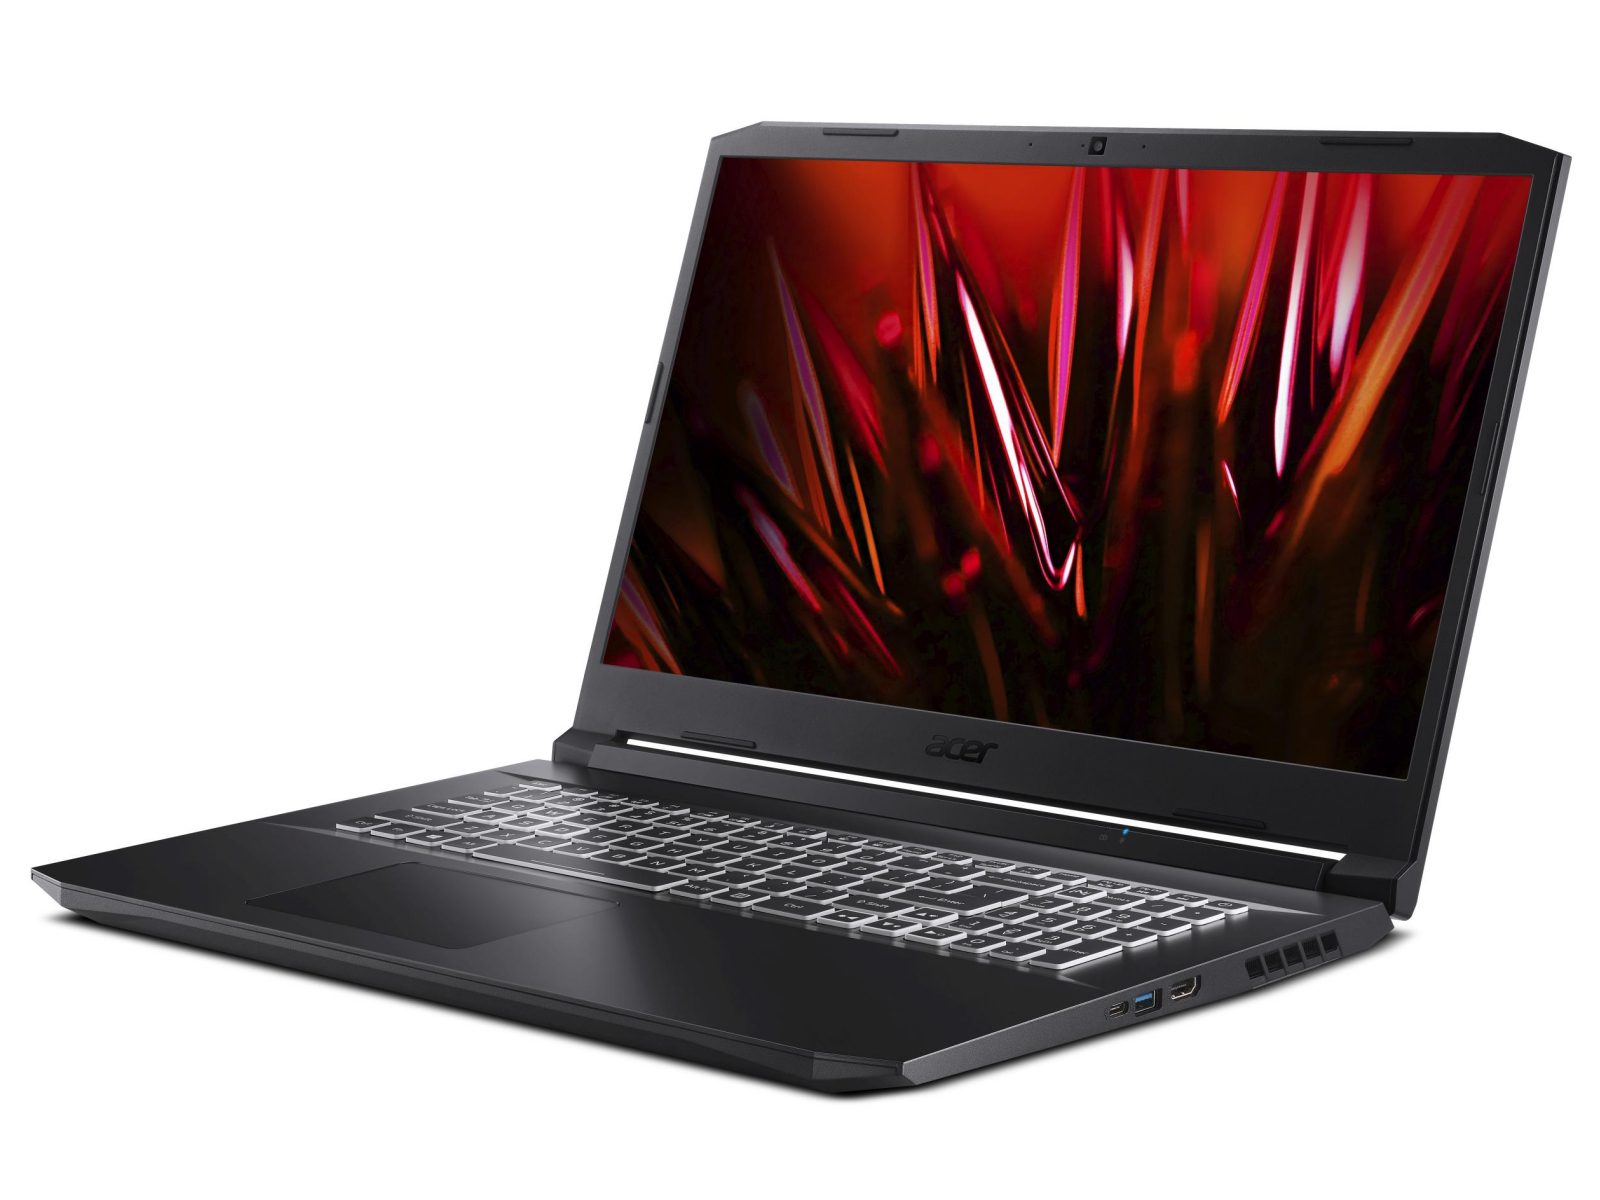 Ноутбук Acer Nitro 5 Купить М Видео